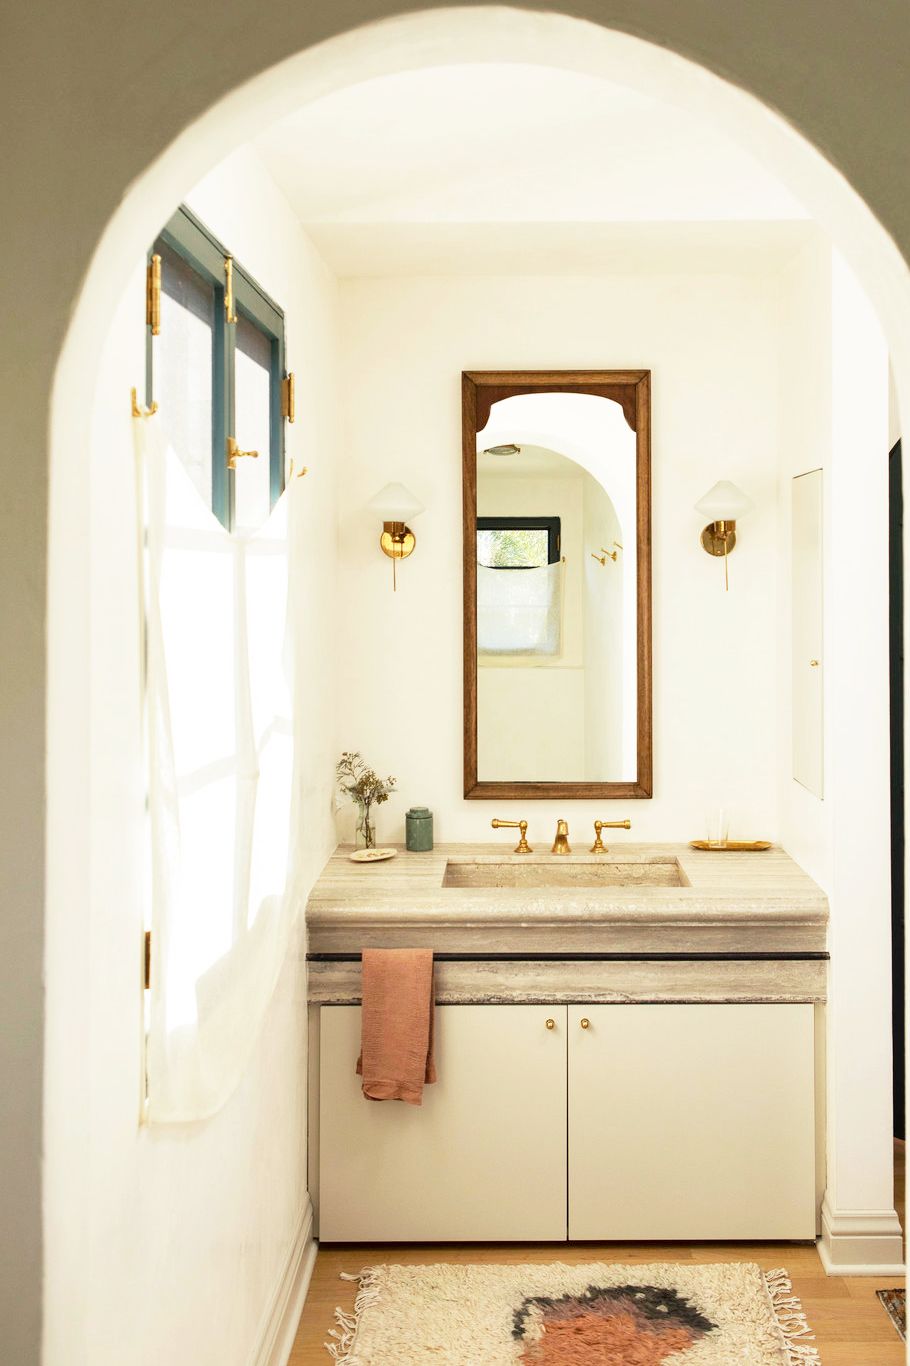 Hình ảnh bên trong phòng tắm nhỏ màu kem với cửa sổ sơn xanh, rèm trắng